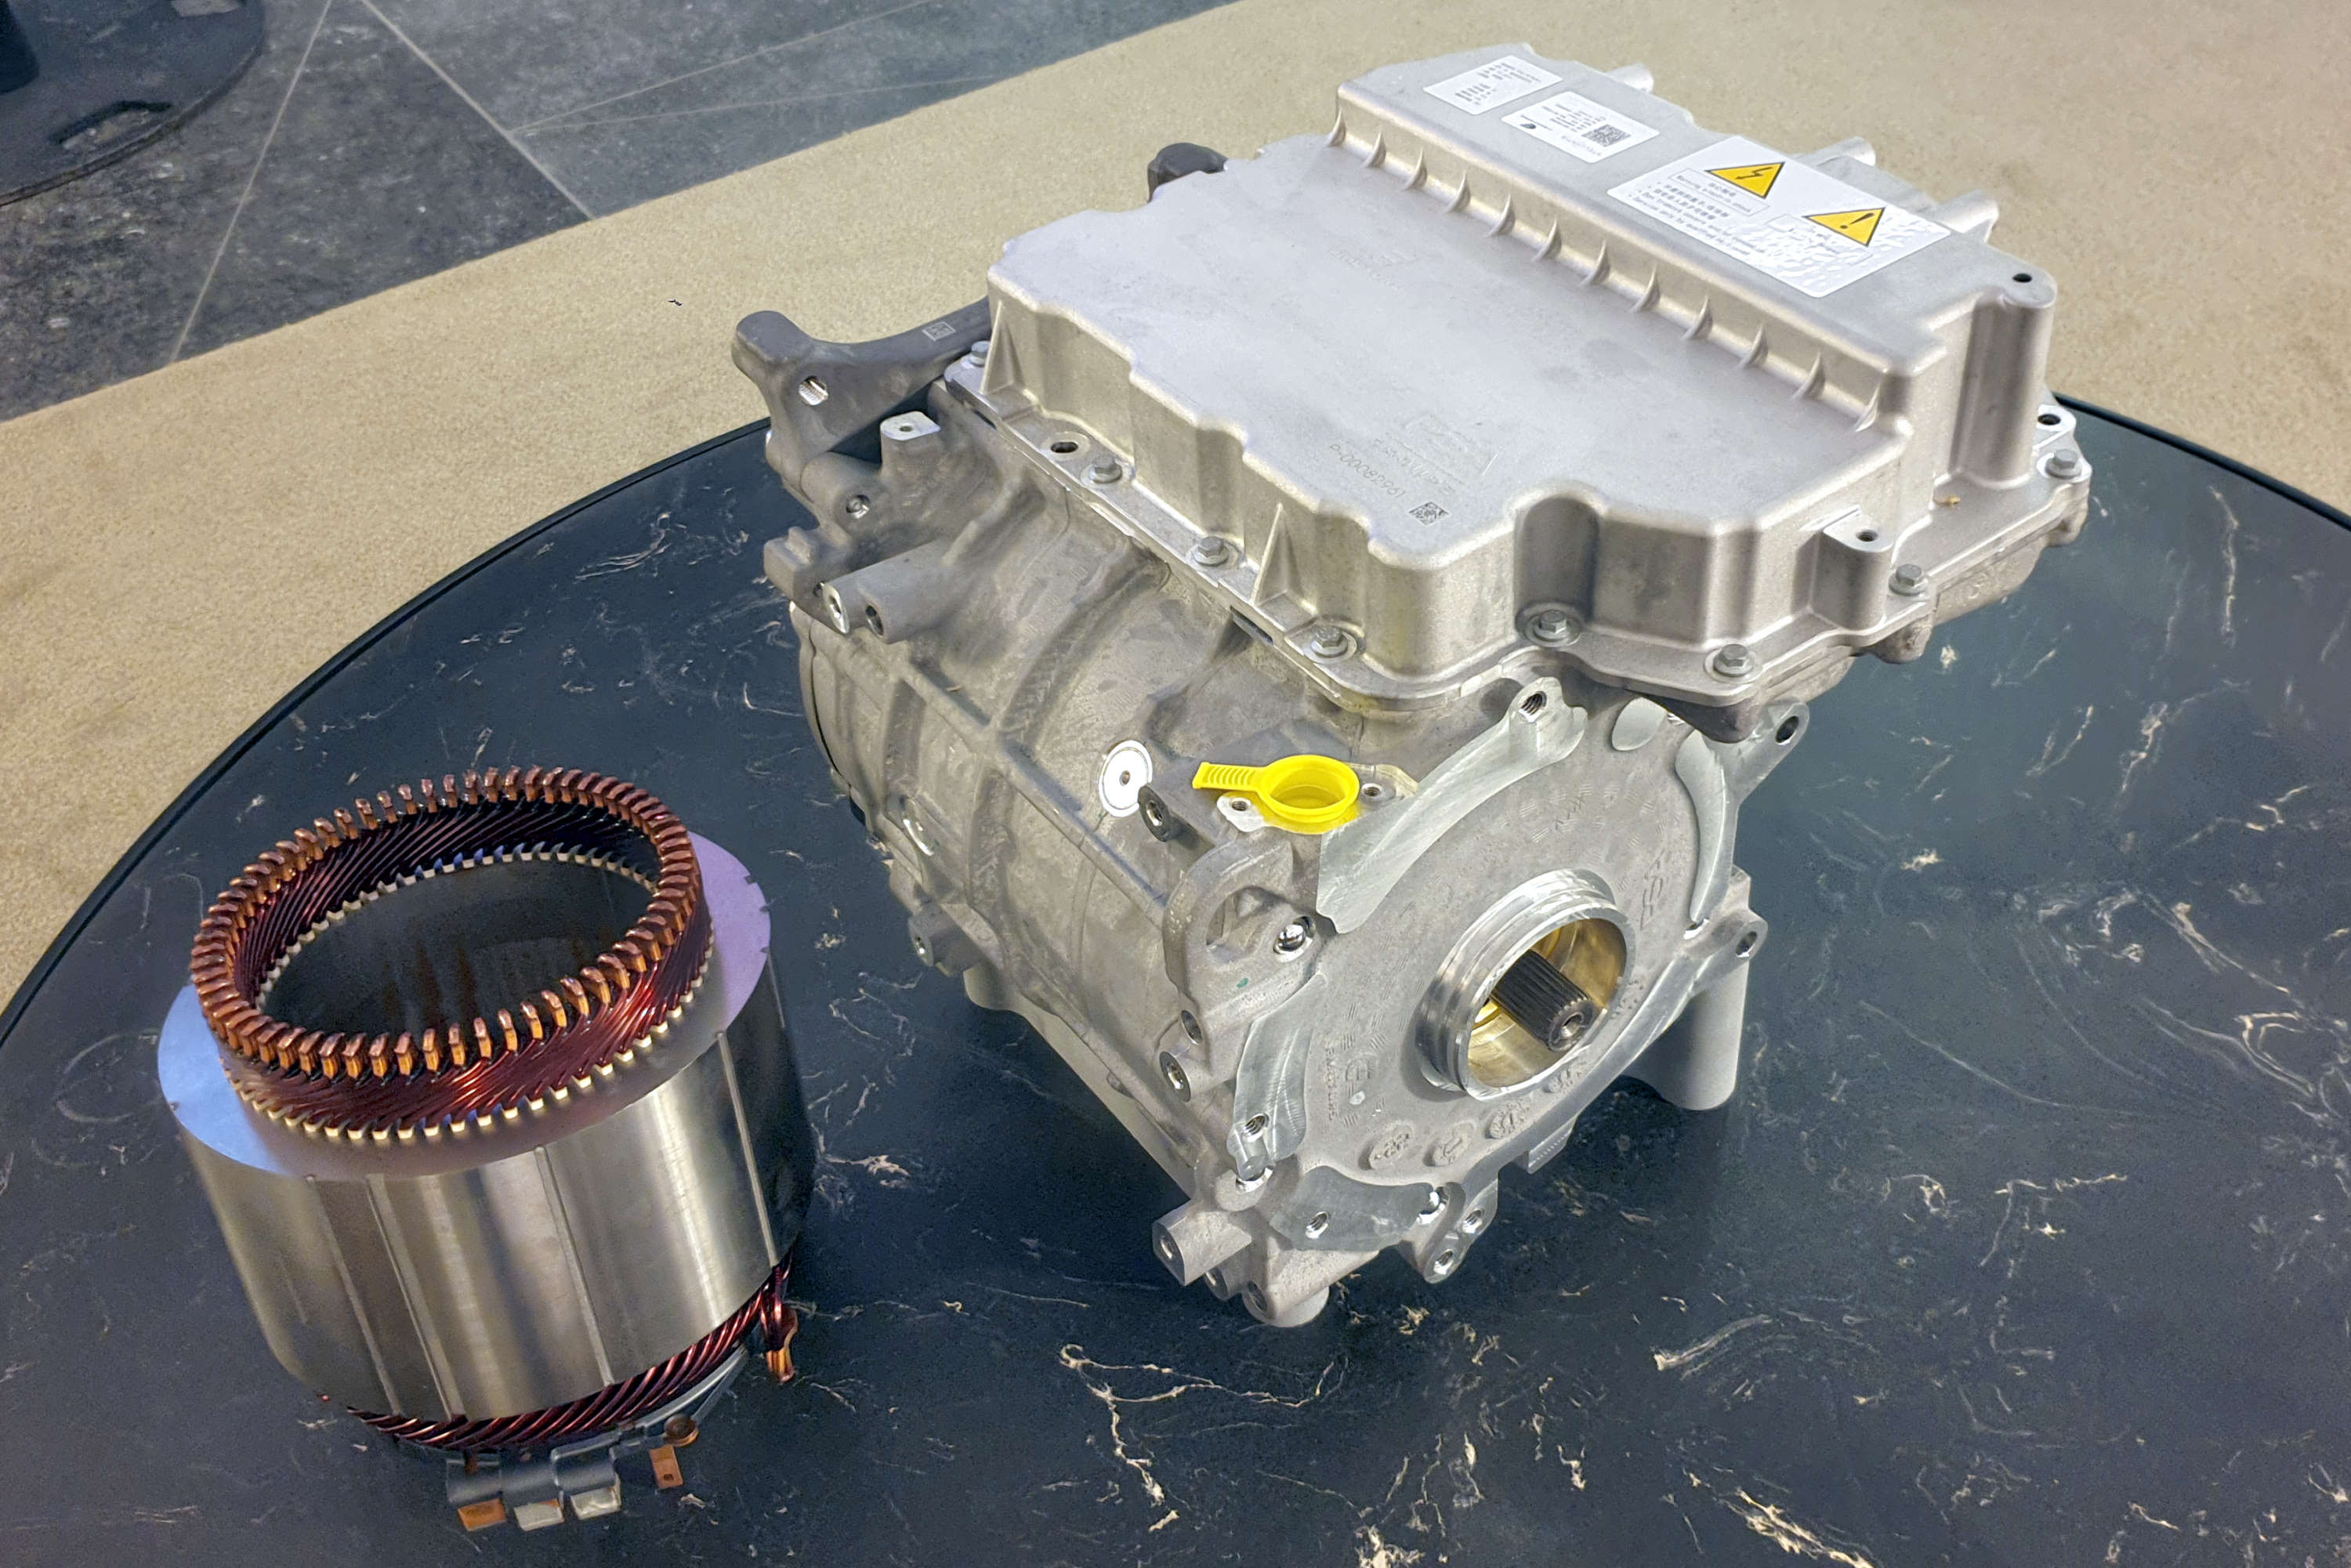 Der 400 Volt-Elektromotor ist der erste von Emotors, einem Gemeinschaftsunternehmen von Stellantis und der Nidec Leroy-Somer Holding. Er liefert 115 Kilowatt (156 PS) Leistung und ein maximales Drehmoment von 260 Newtonmetern bei einer Getriebe-Untersetzung von 8,69.